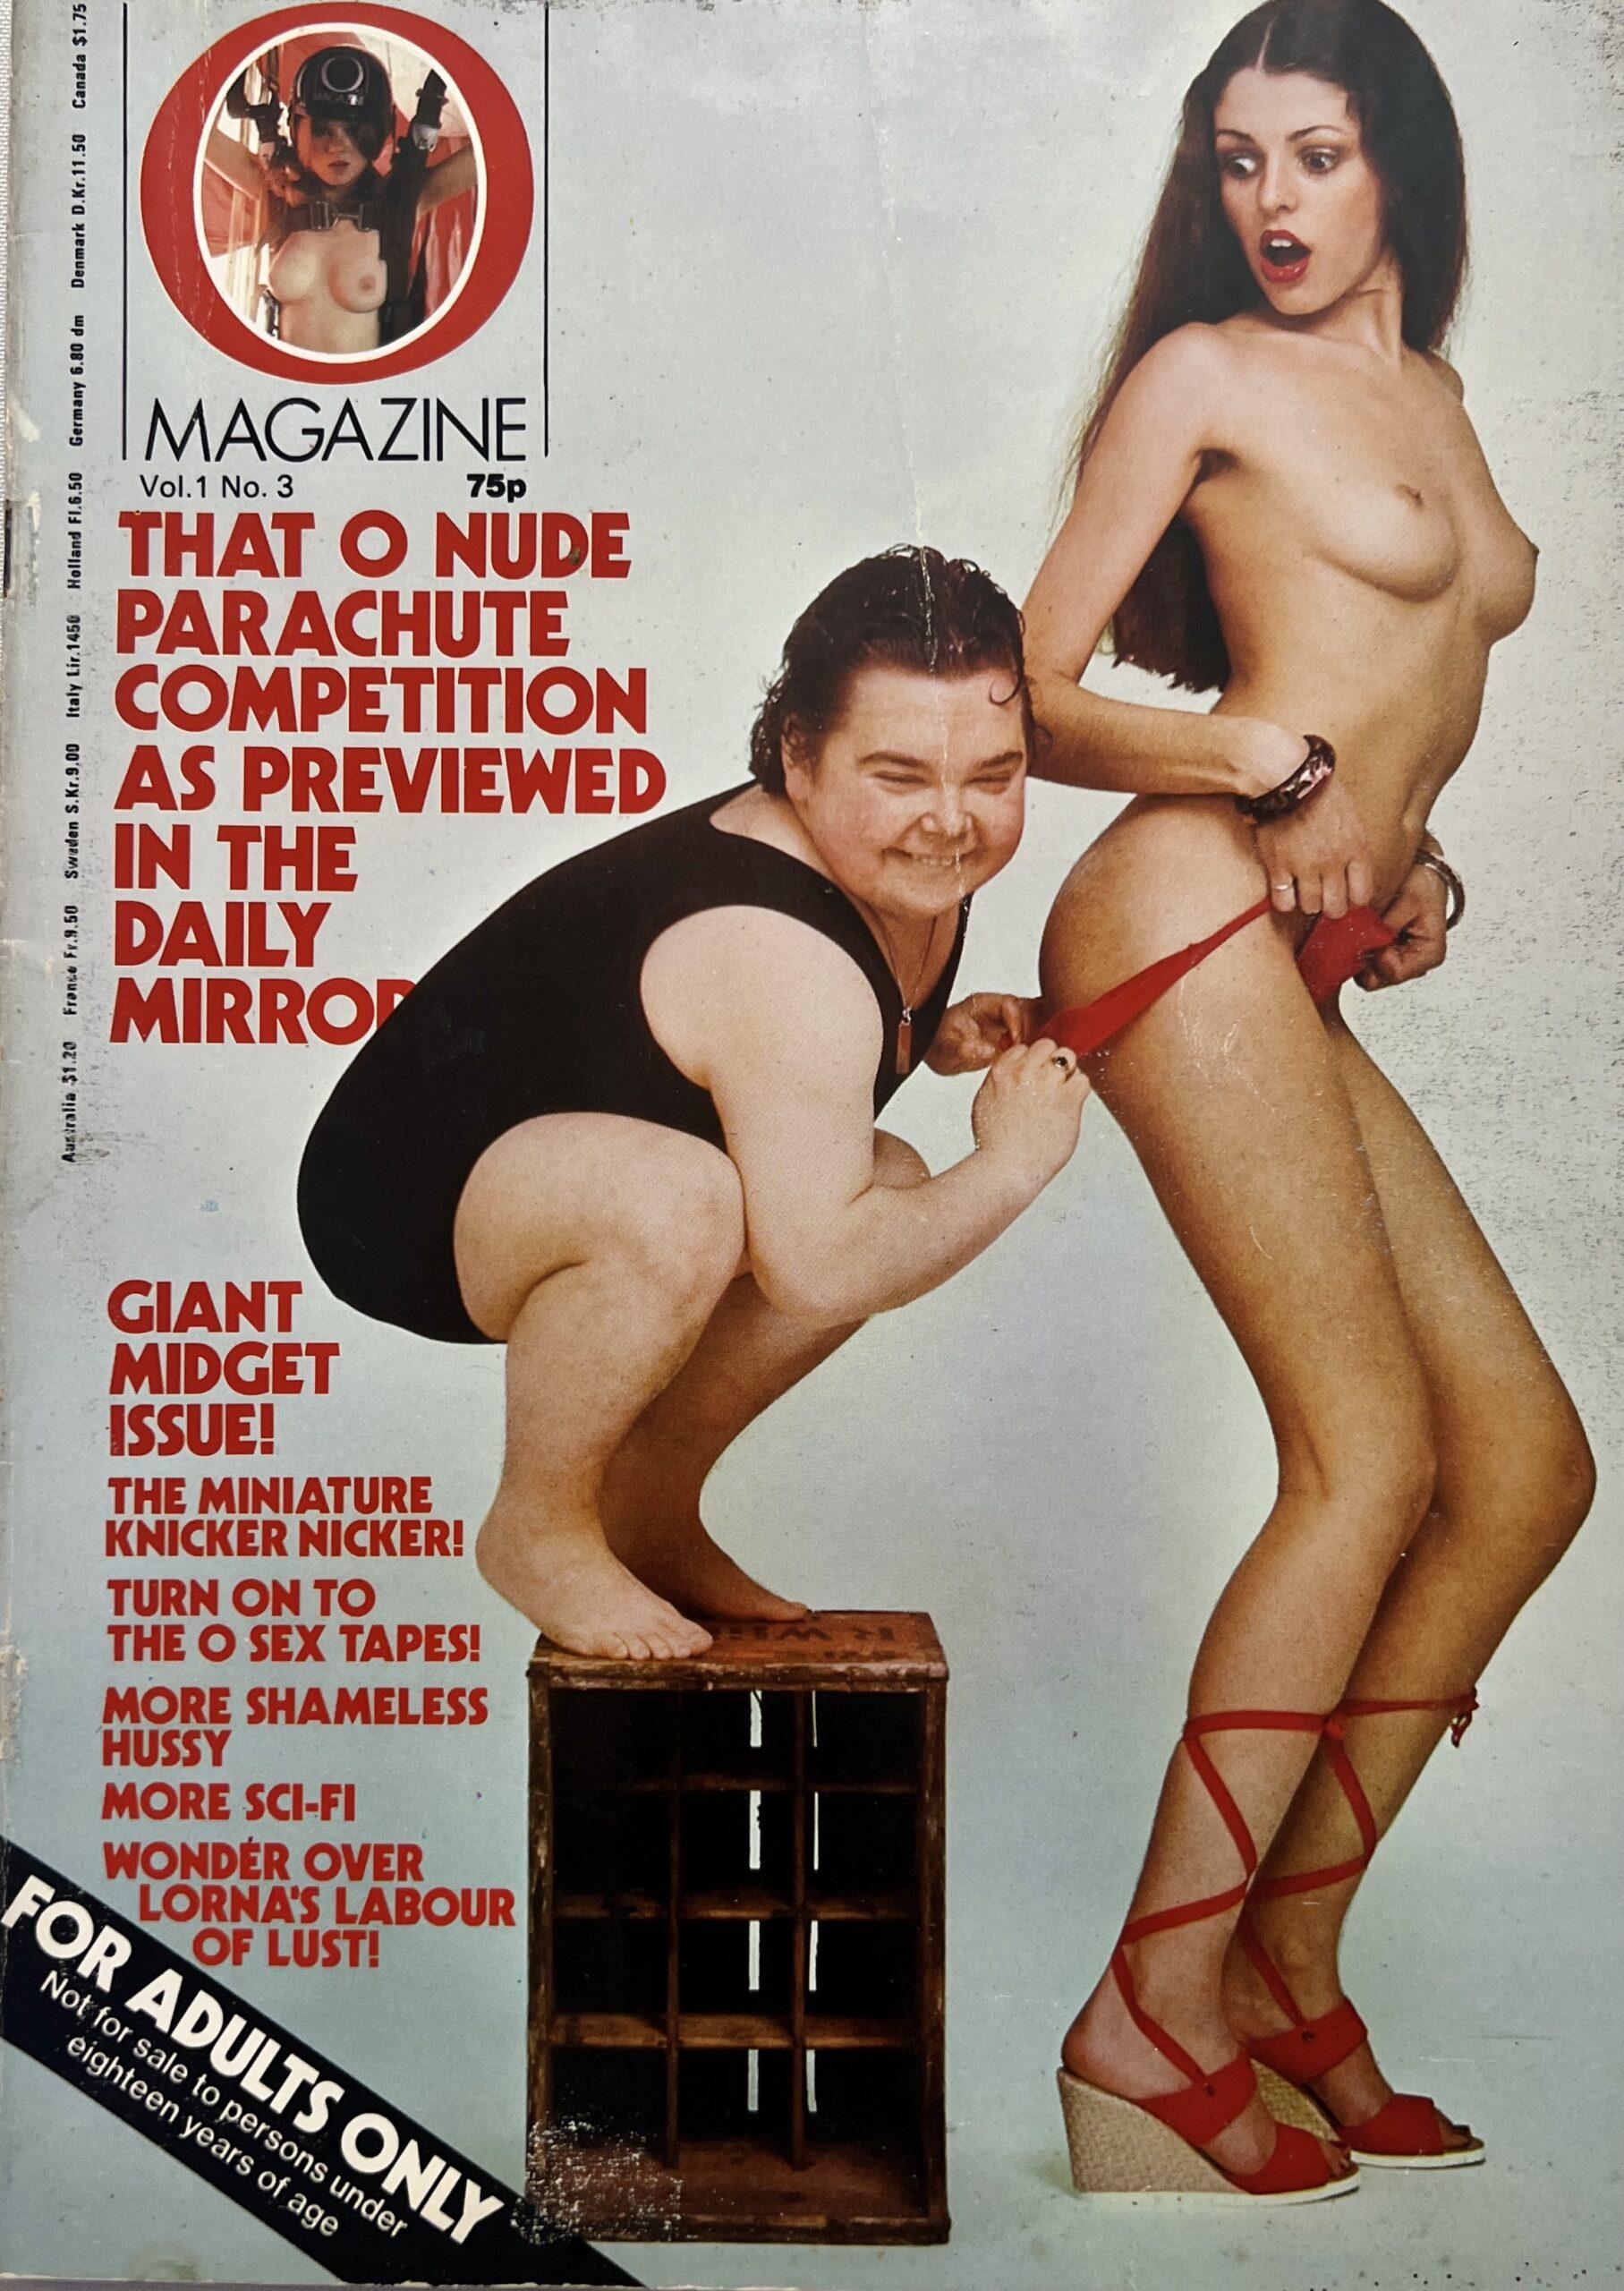 Magazine 1/3 1977 UK Magazine *Giant Midget Issue*